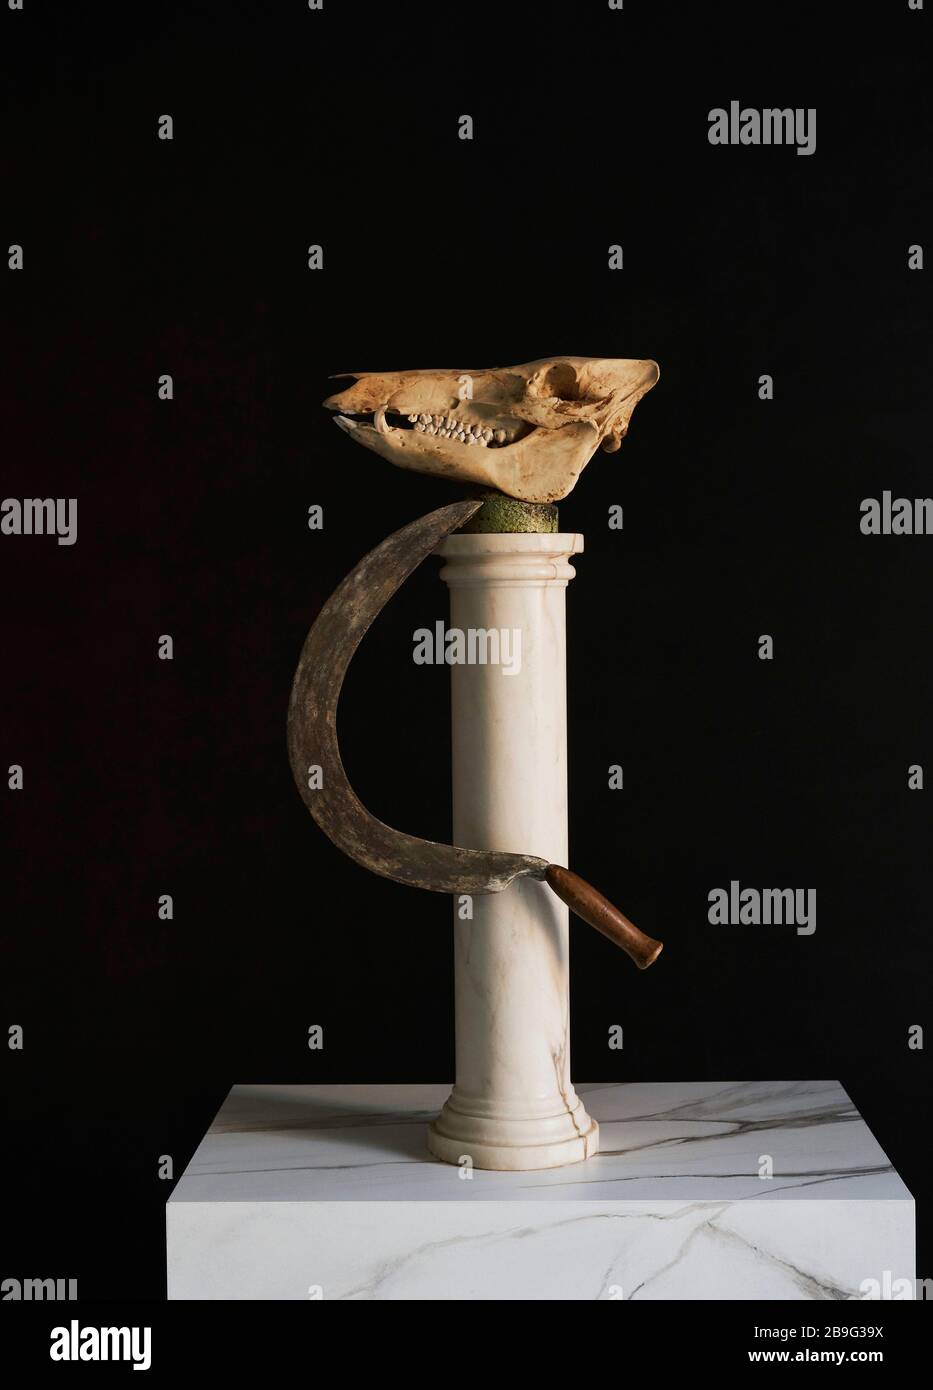 Animal skull and scythe on pedestal Stock Photo